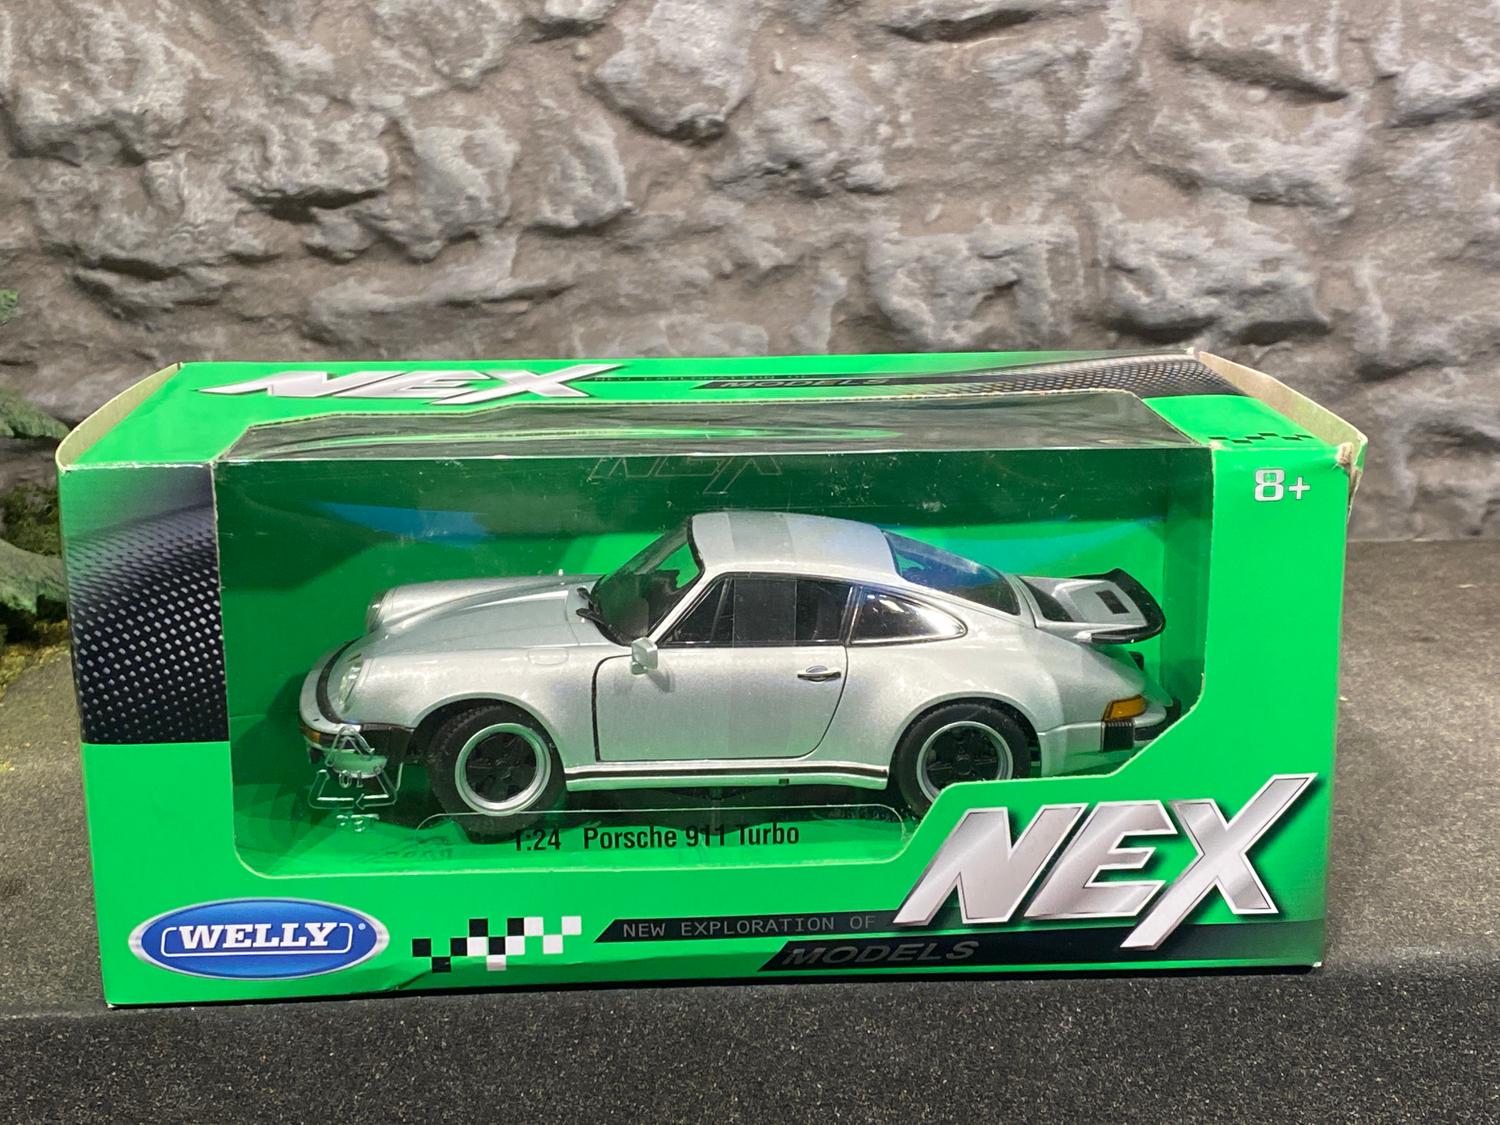 Skala 1/24 Porsche 911 Turbo från Nex models / Welly